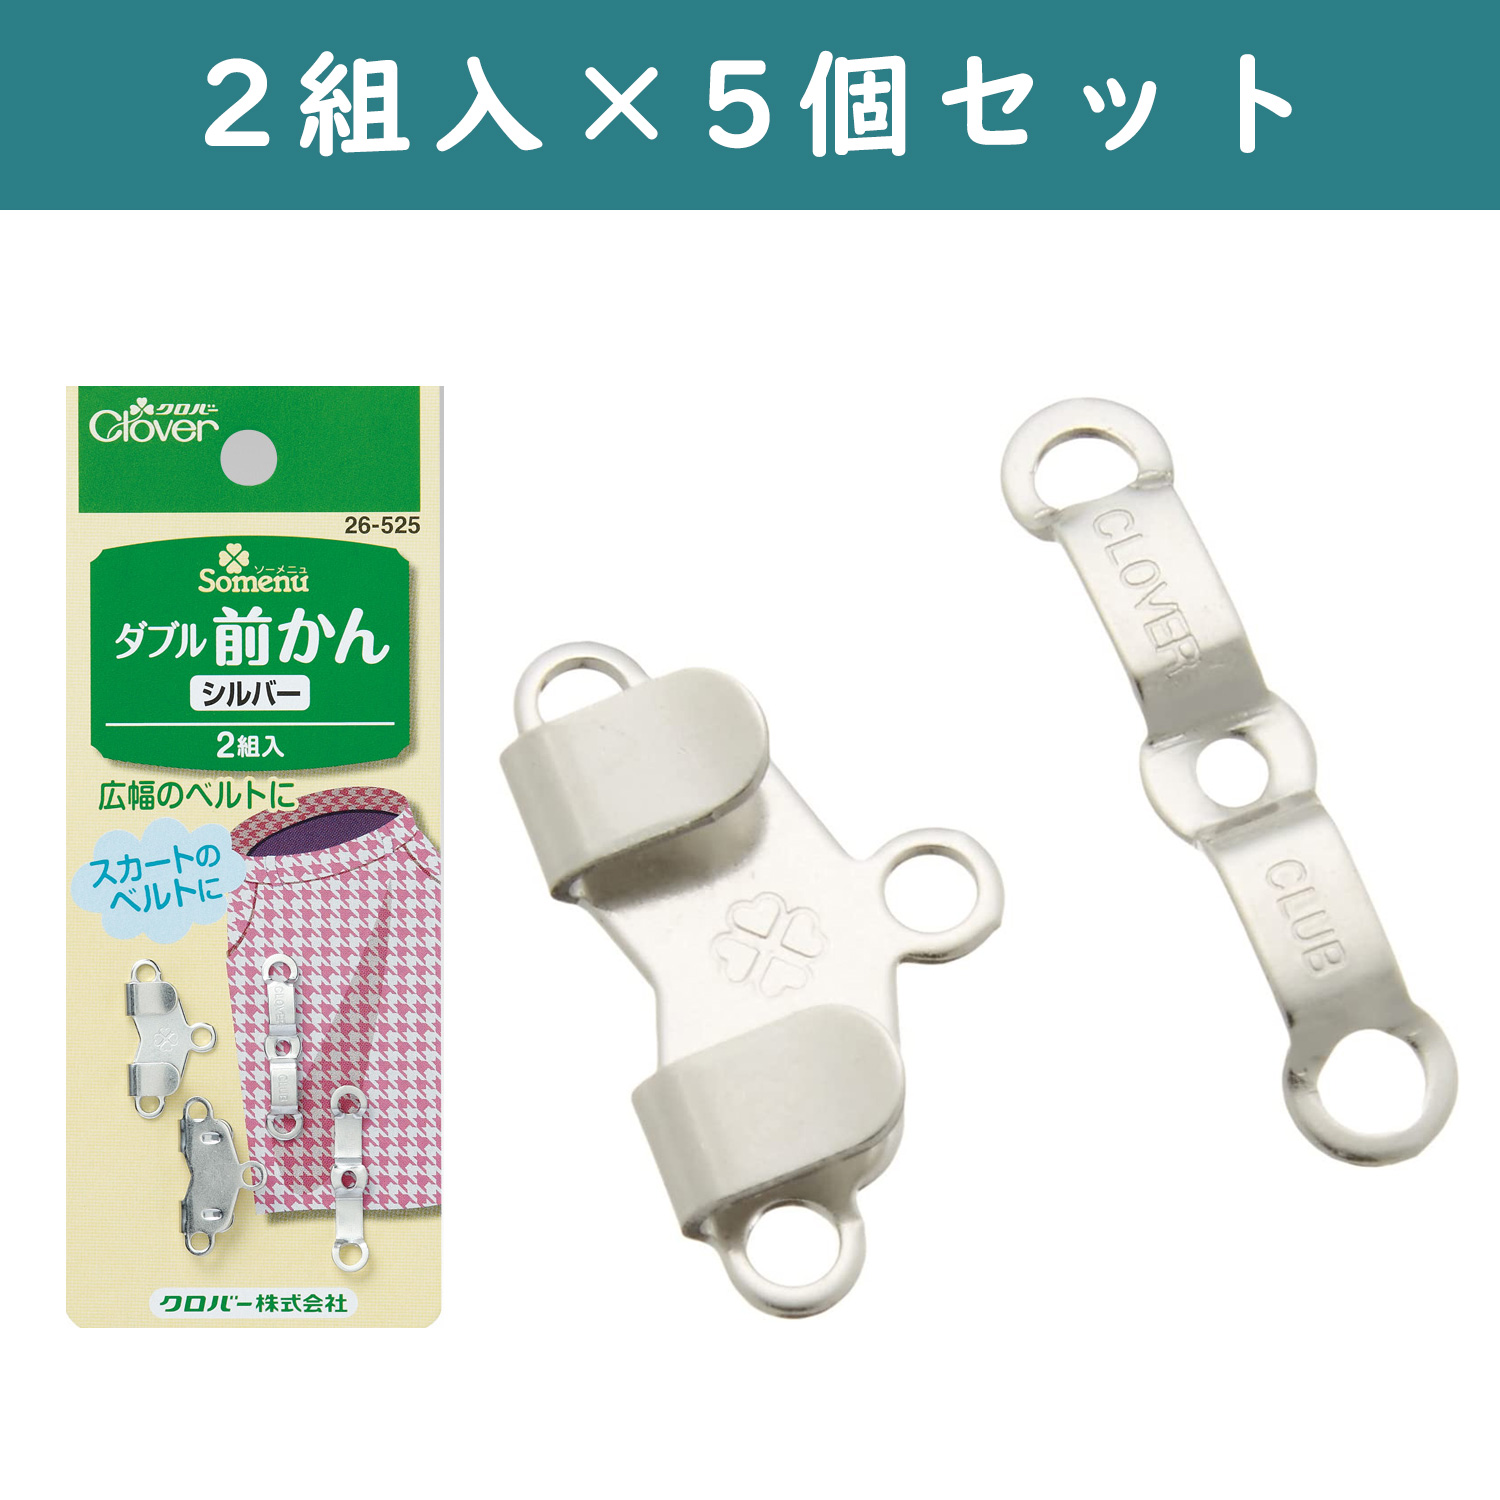 ■【5pcs】CL26-525-5set Double Waist Size Adjustable Silver 2pcs ×5sets (set)